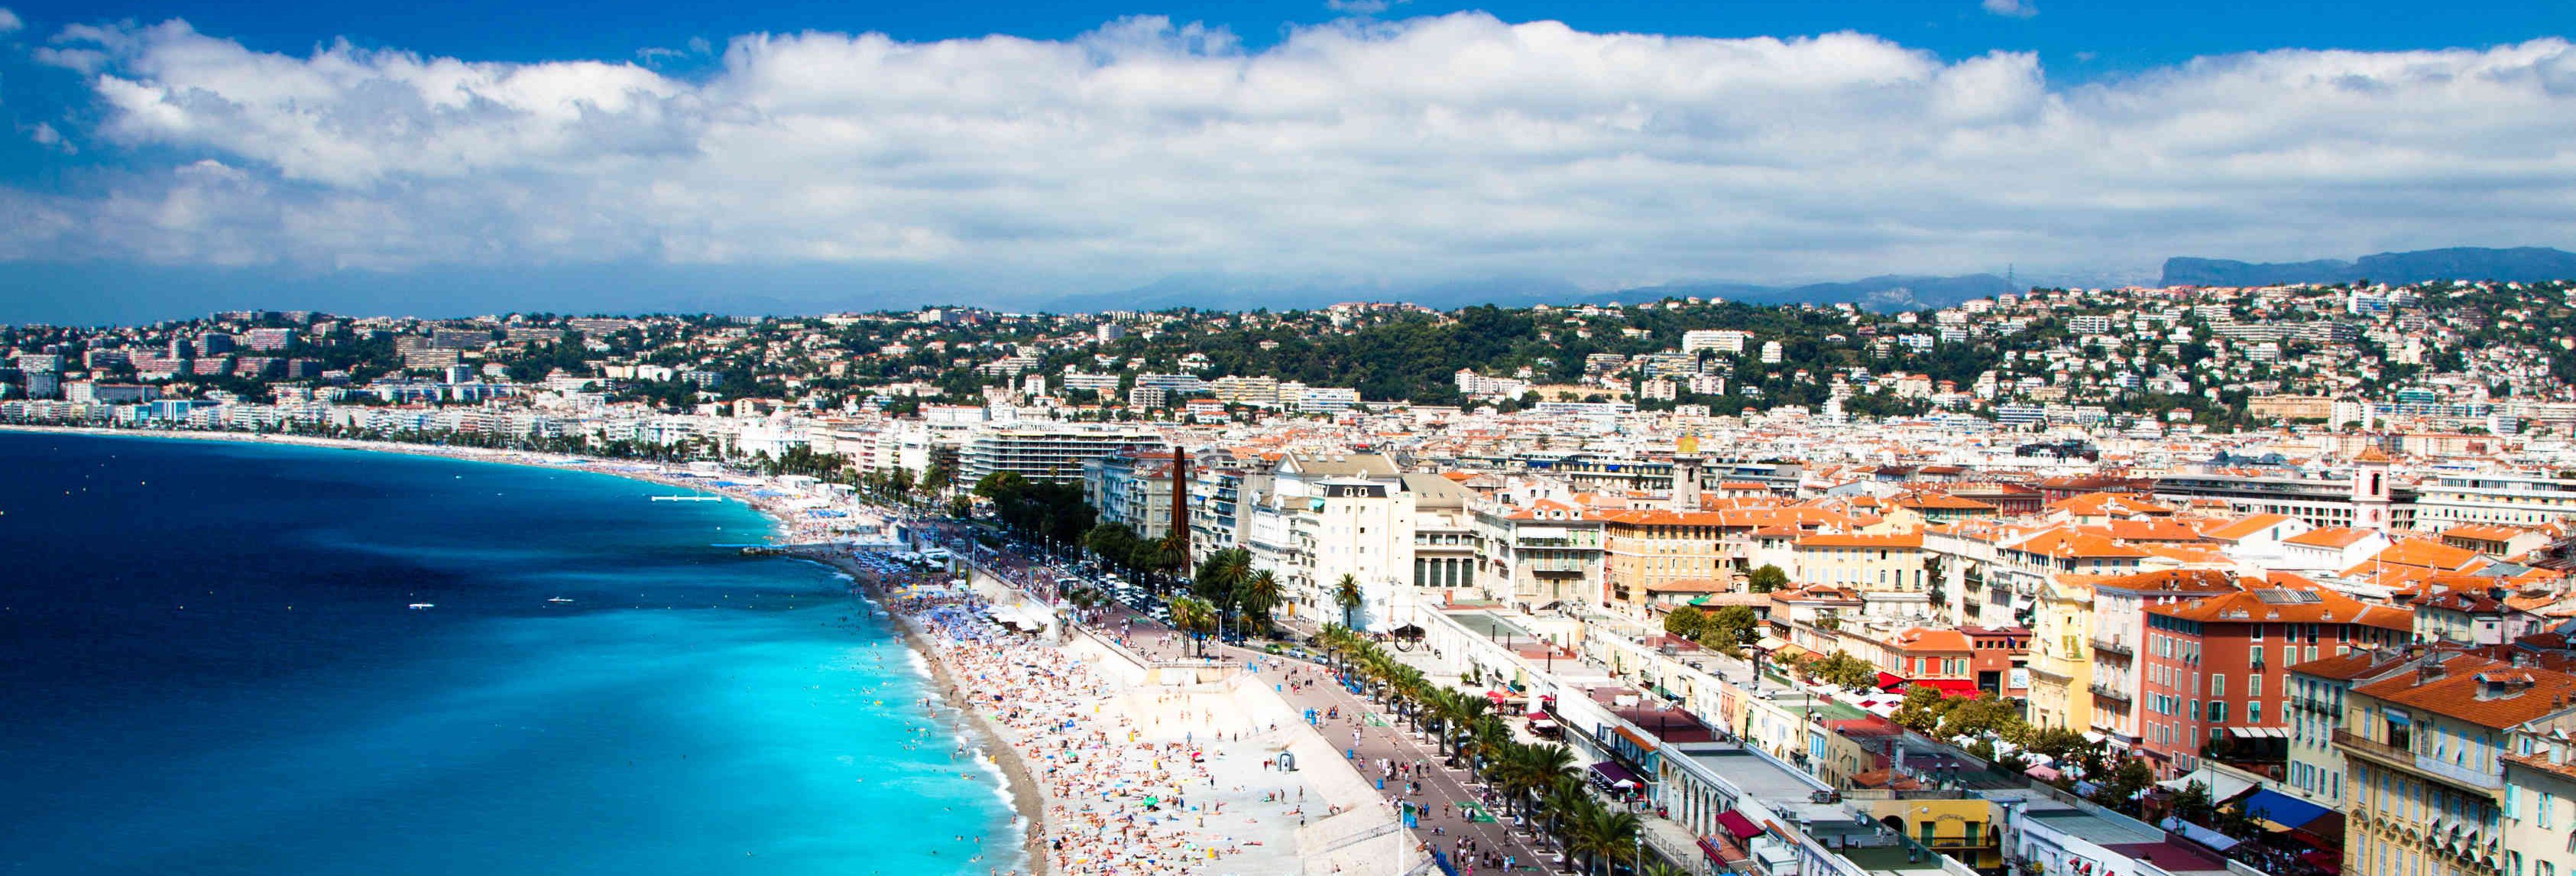 Kulturrejse til Nice Côte d’Azur